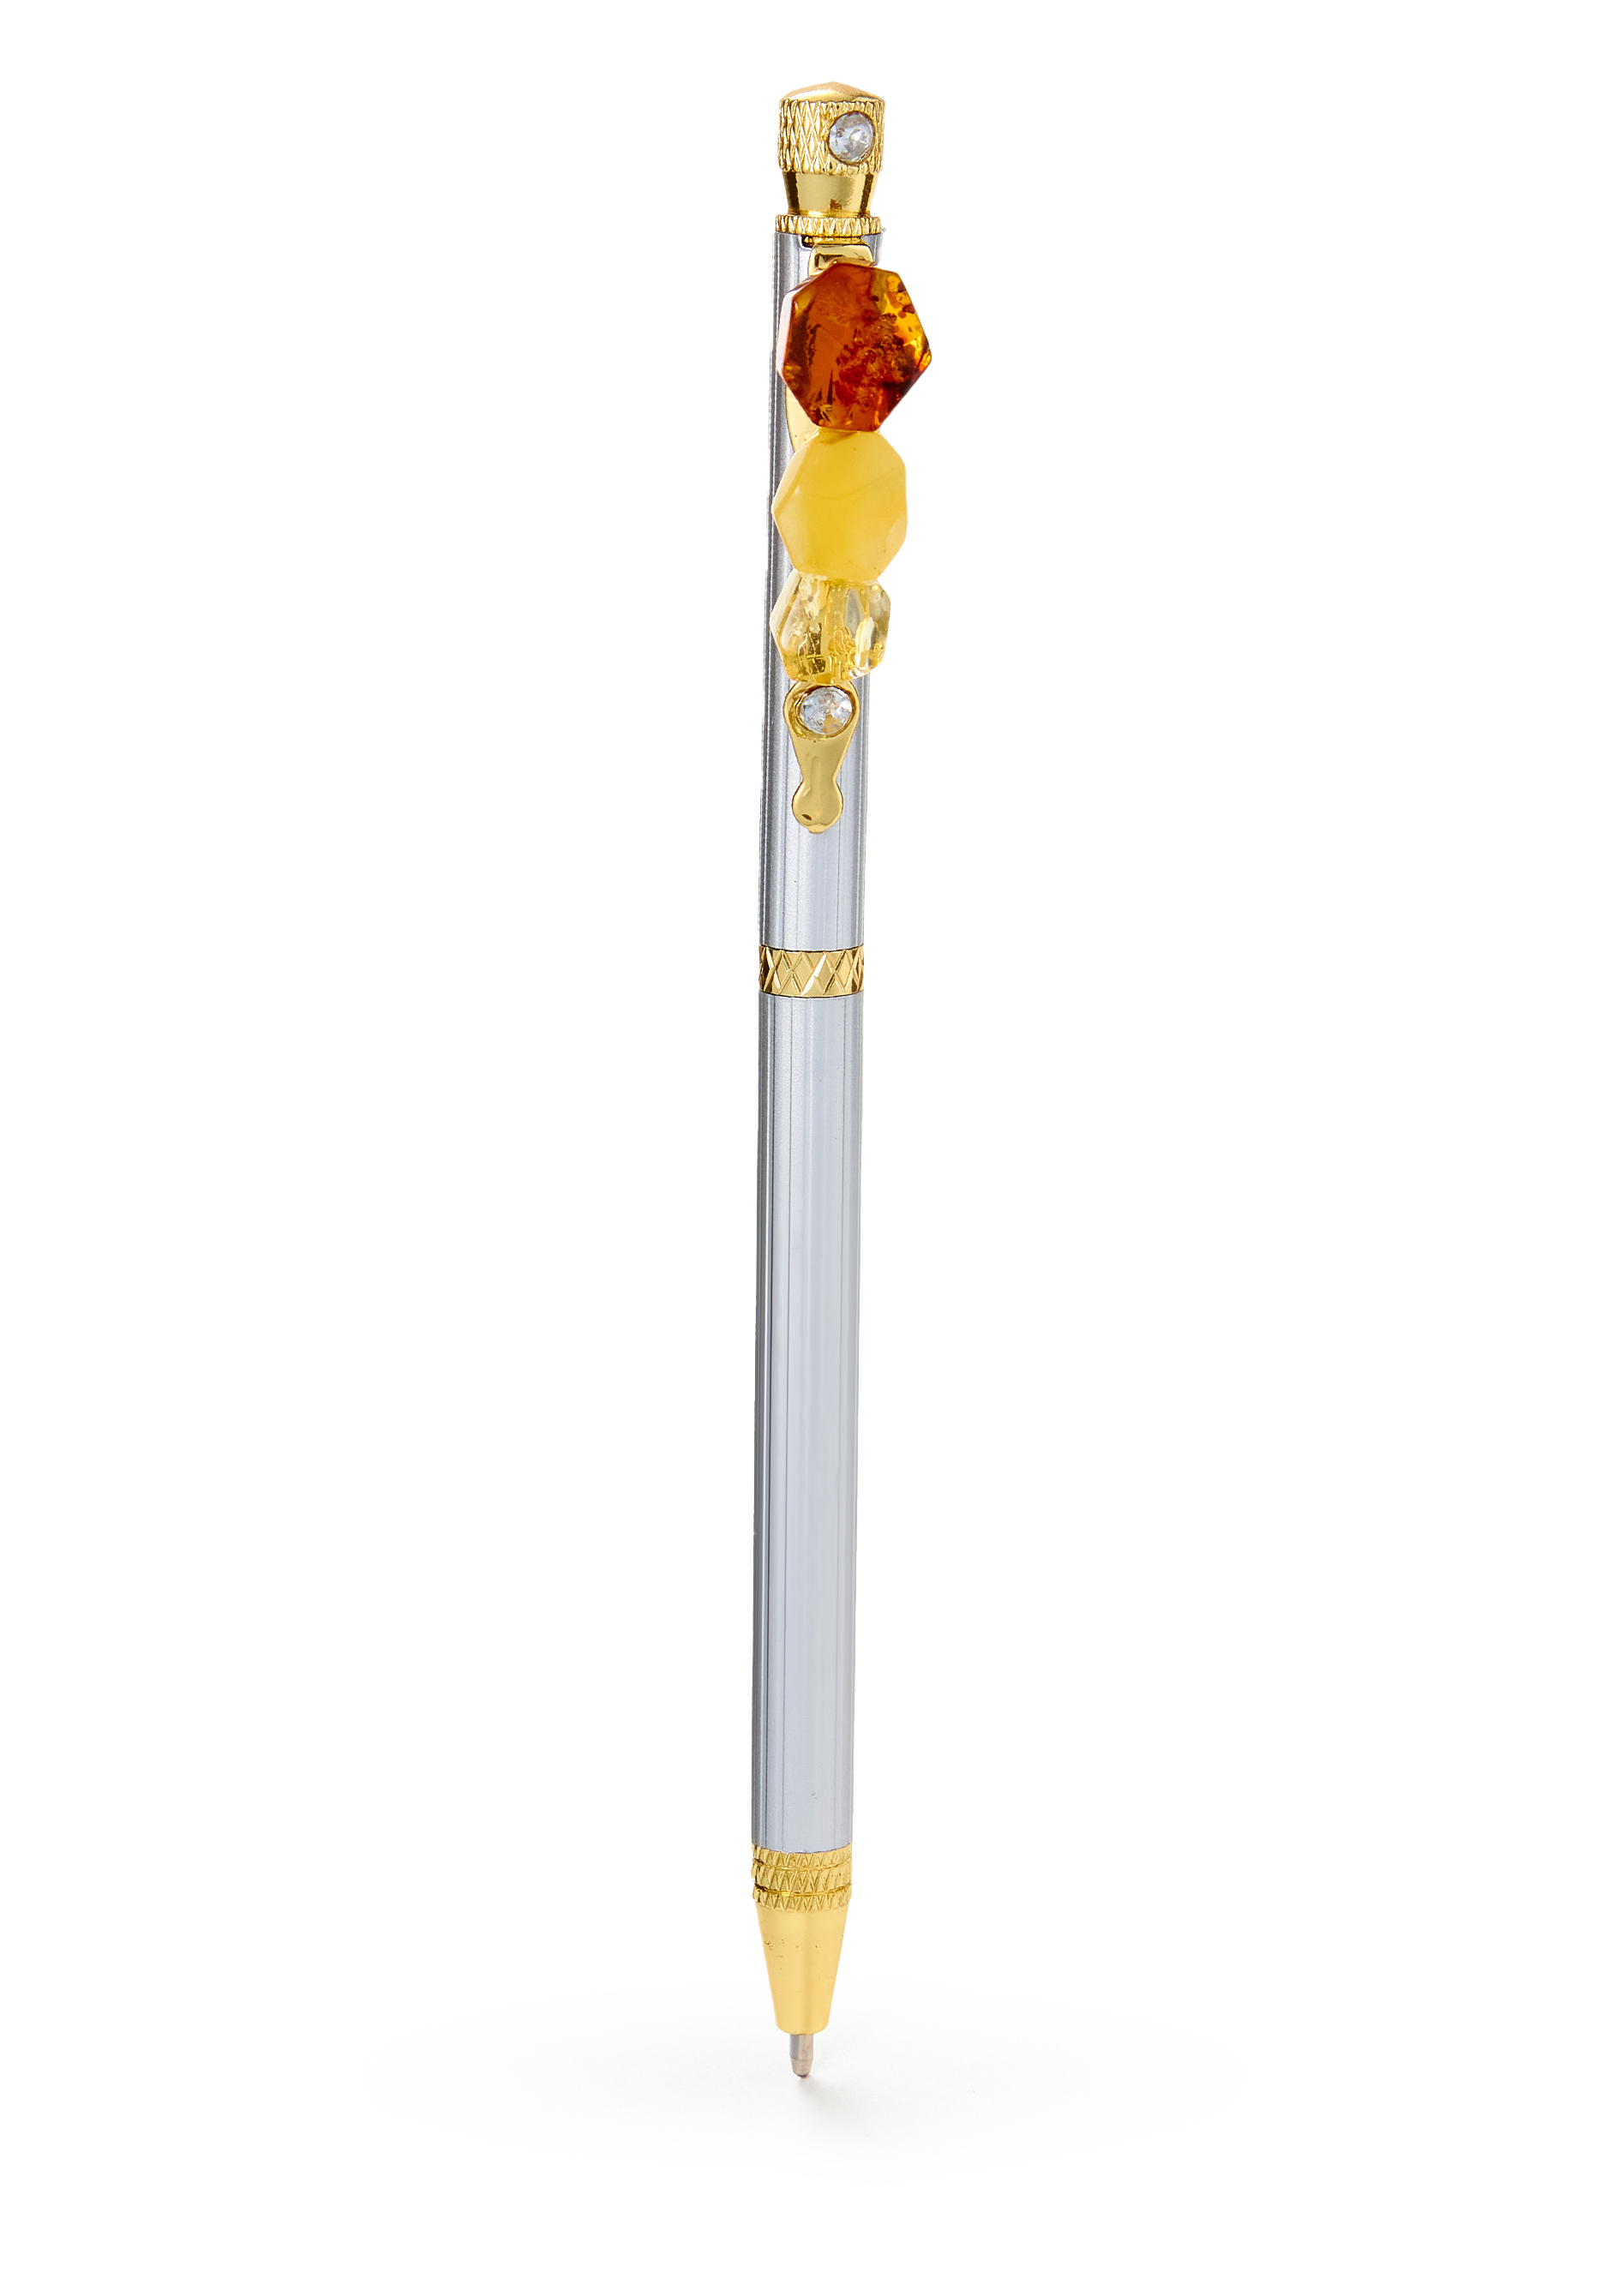 Ручка с янтарем тяпка посадочная длина 28 см деревянная ручка с поролоном